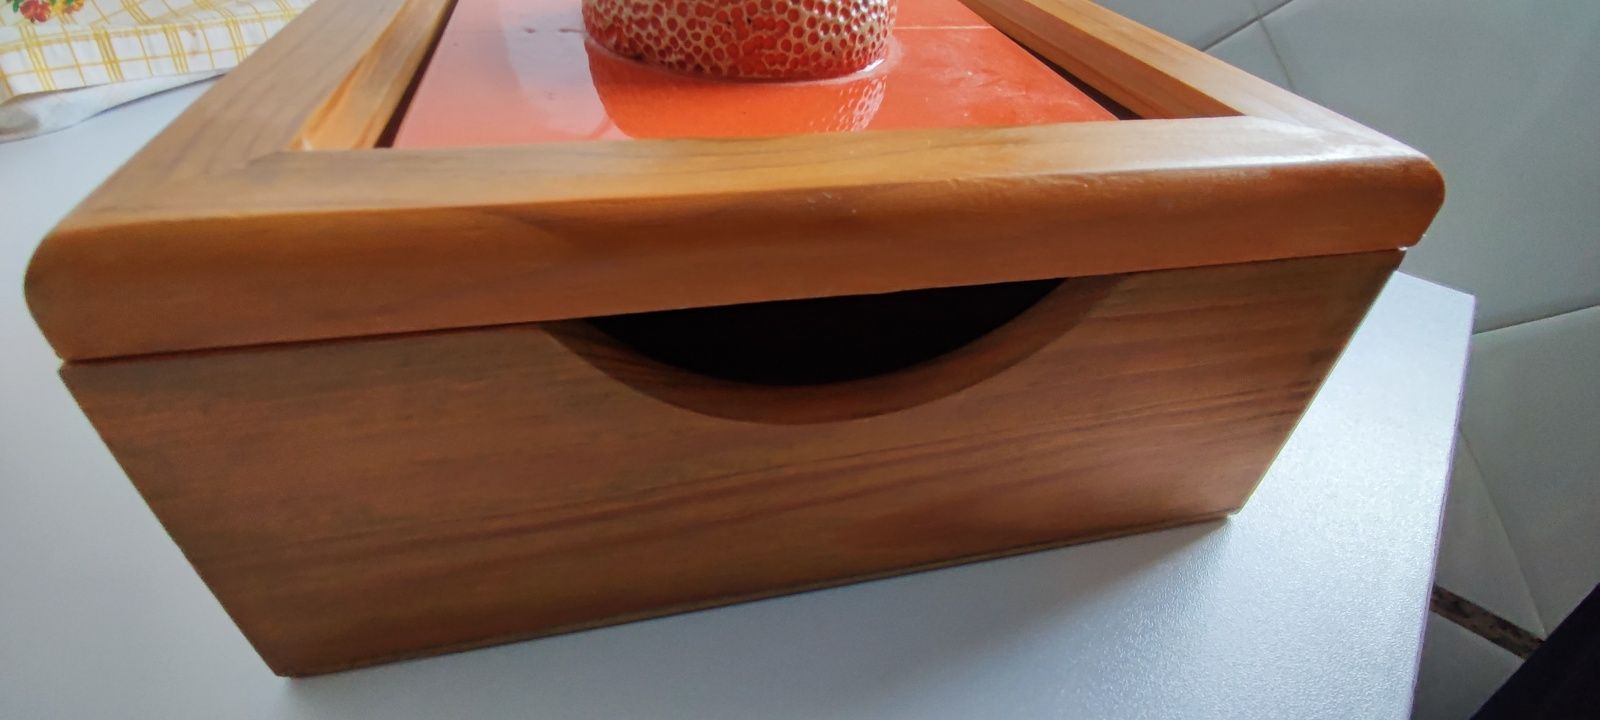 Caixa de madeira com cerâmica